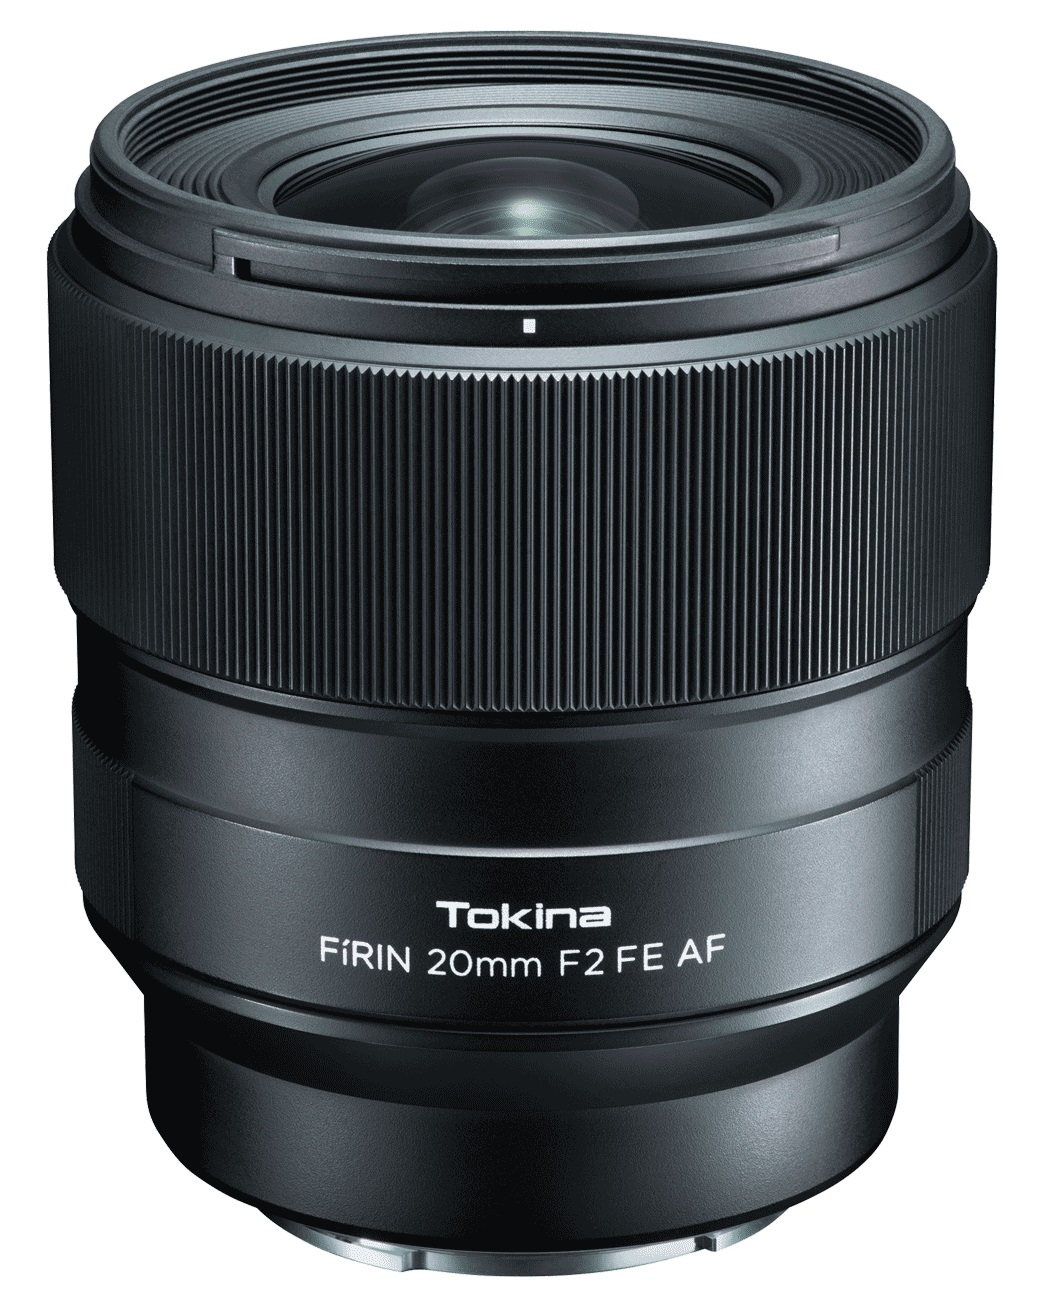 Объектив Tokina FIRIN 20mm F2 FE AF для Sony автофокус объектив sigma af 65mm f 2 dg dn c sony e